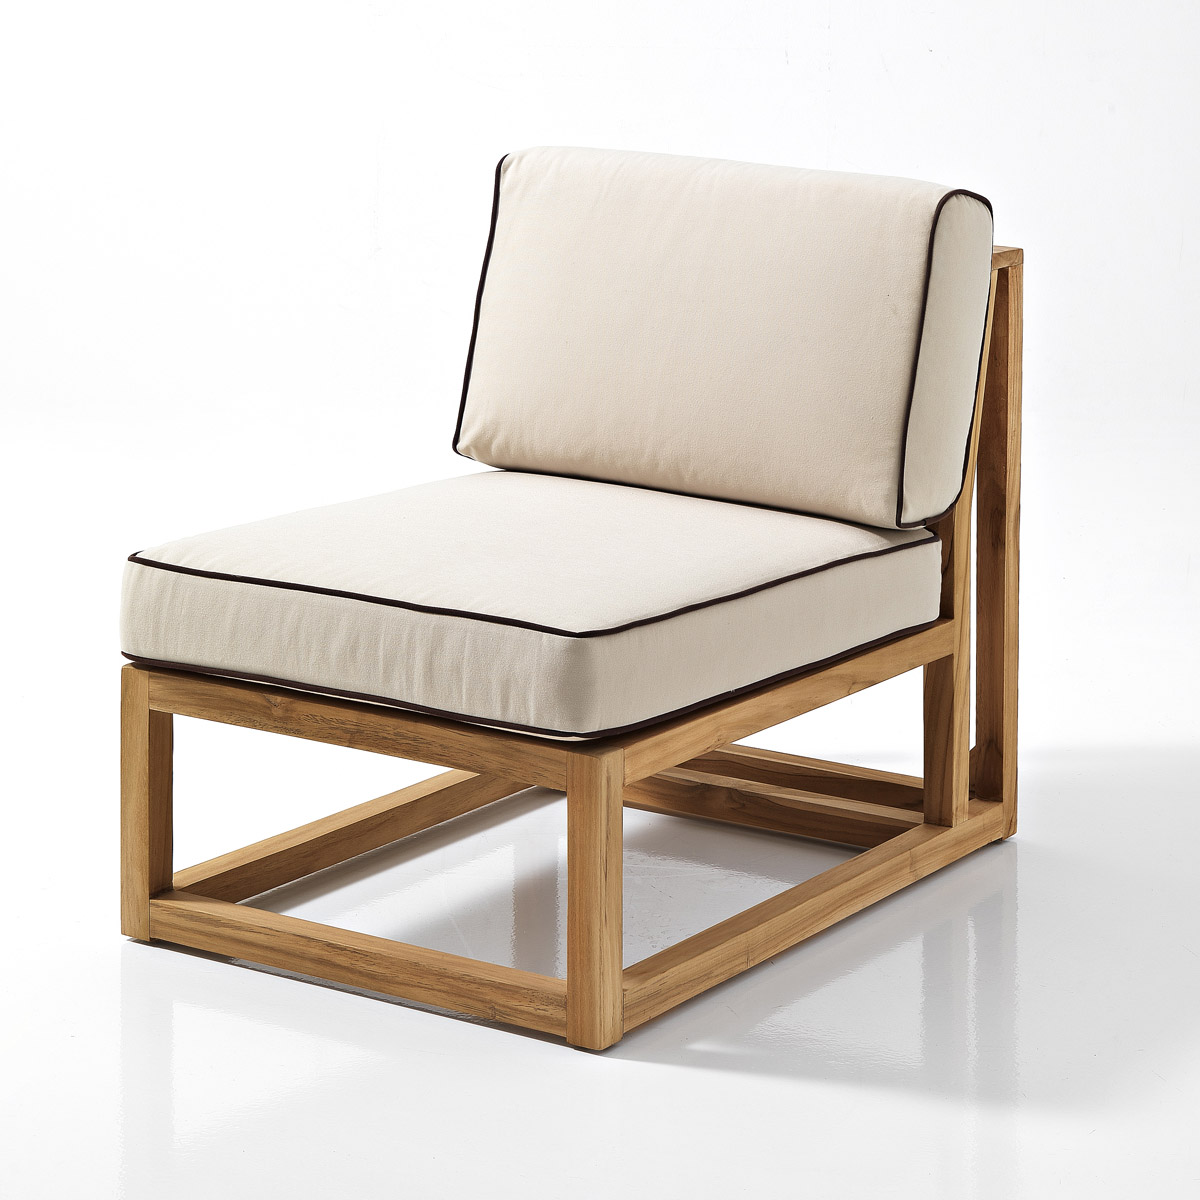 sancilio evotech molfetta - forniture outdoor arredogiardino sedie sedute poltrone divani complementi lounge sostenibilità ROSASPLENDIANI